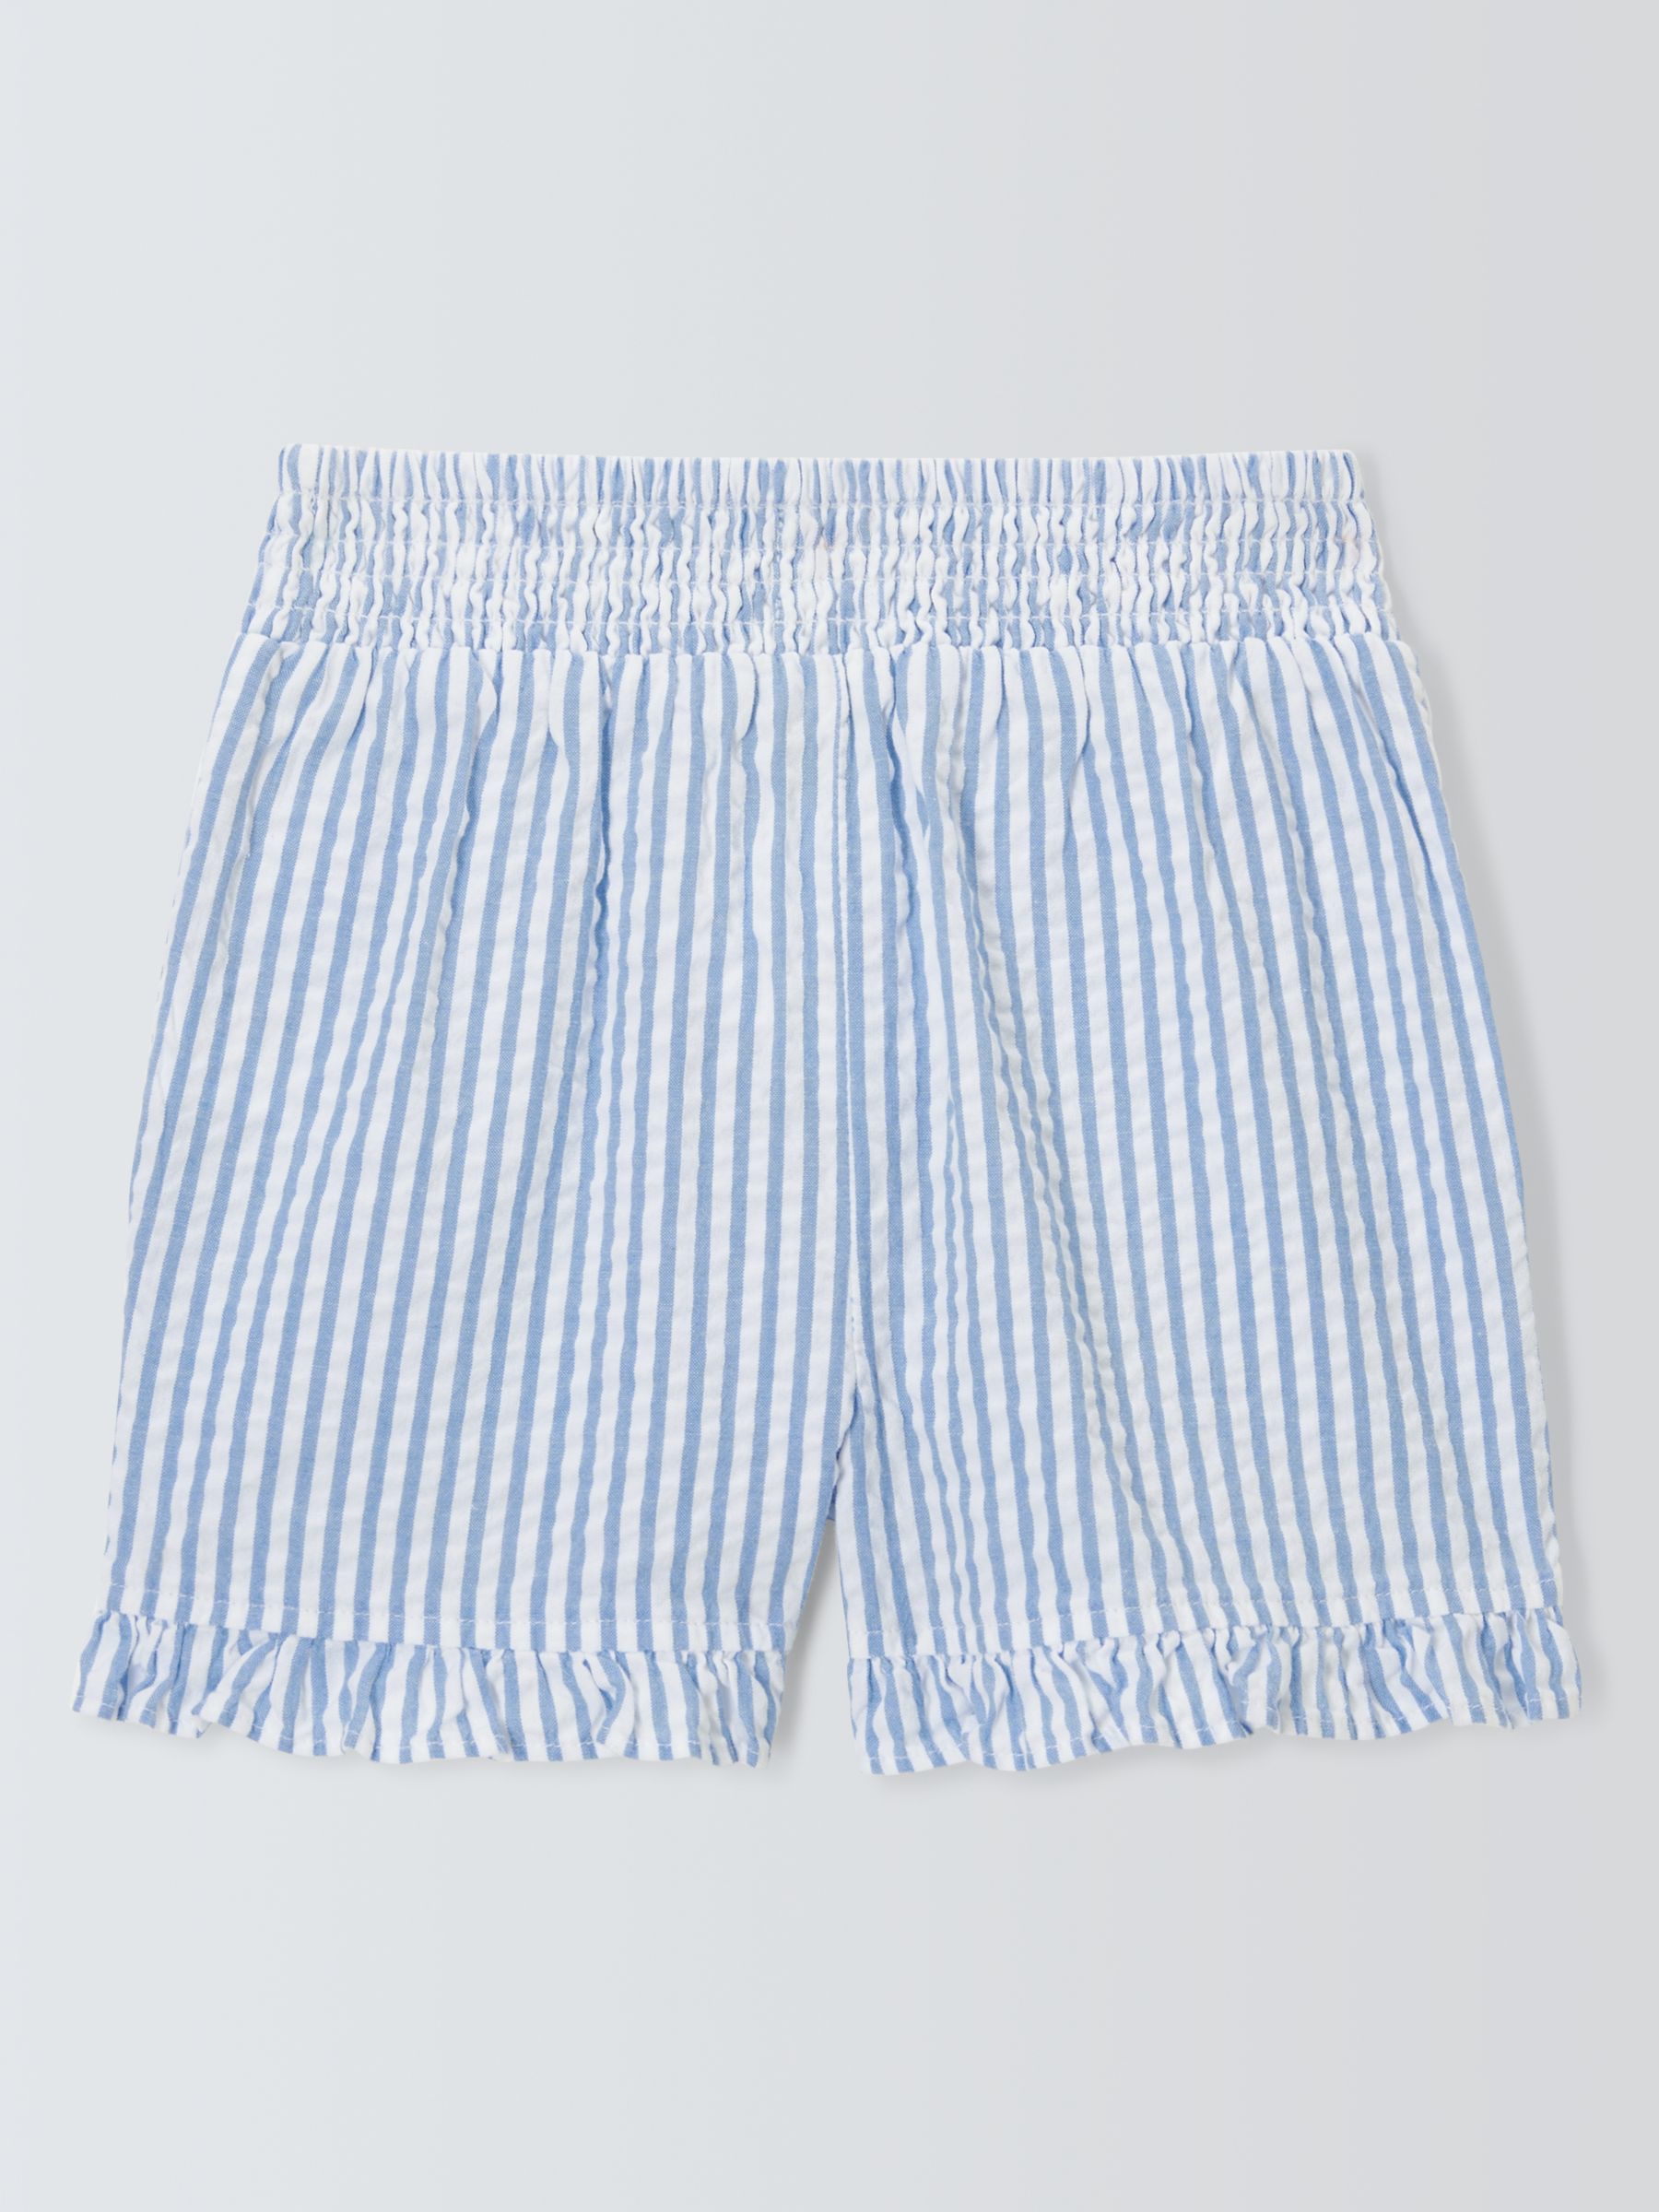 John Lewis Kids' Seersucker Stripe Shorts, Blue Bonnet, 10 years